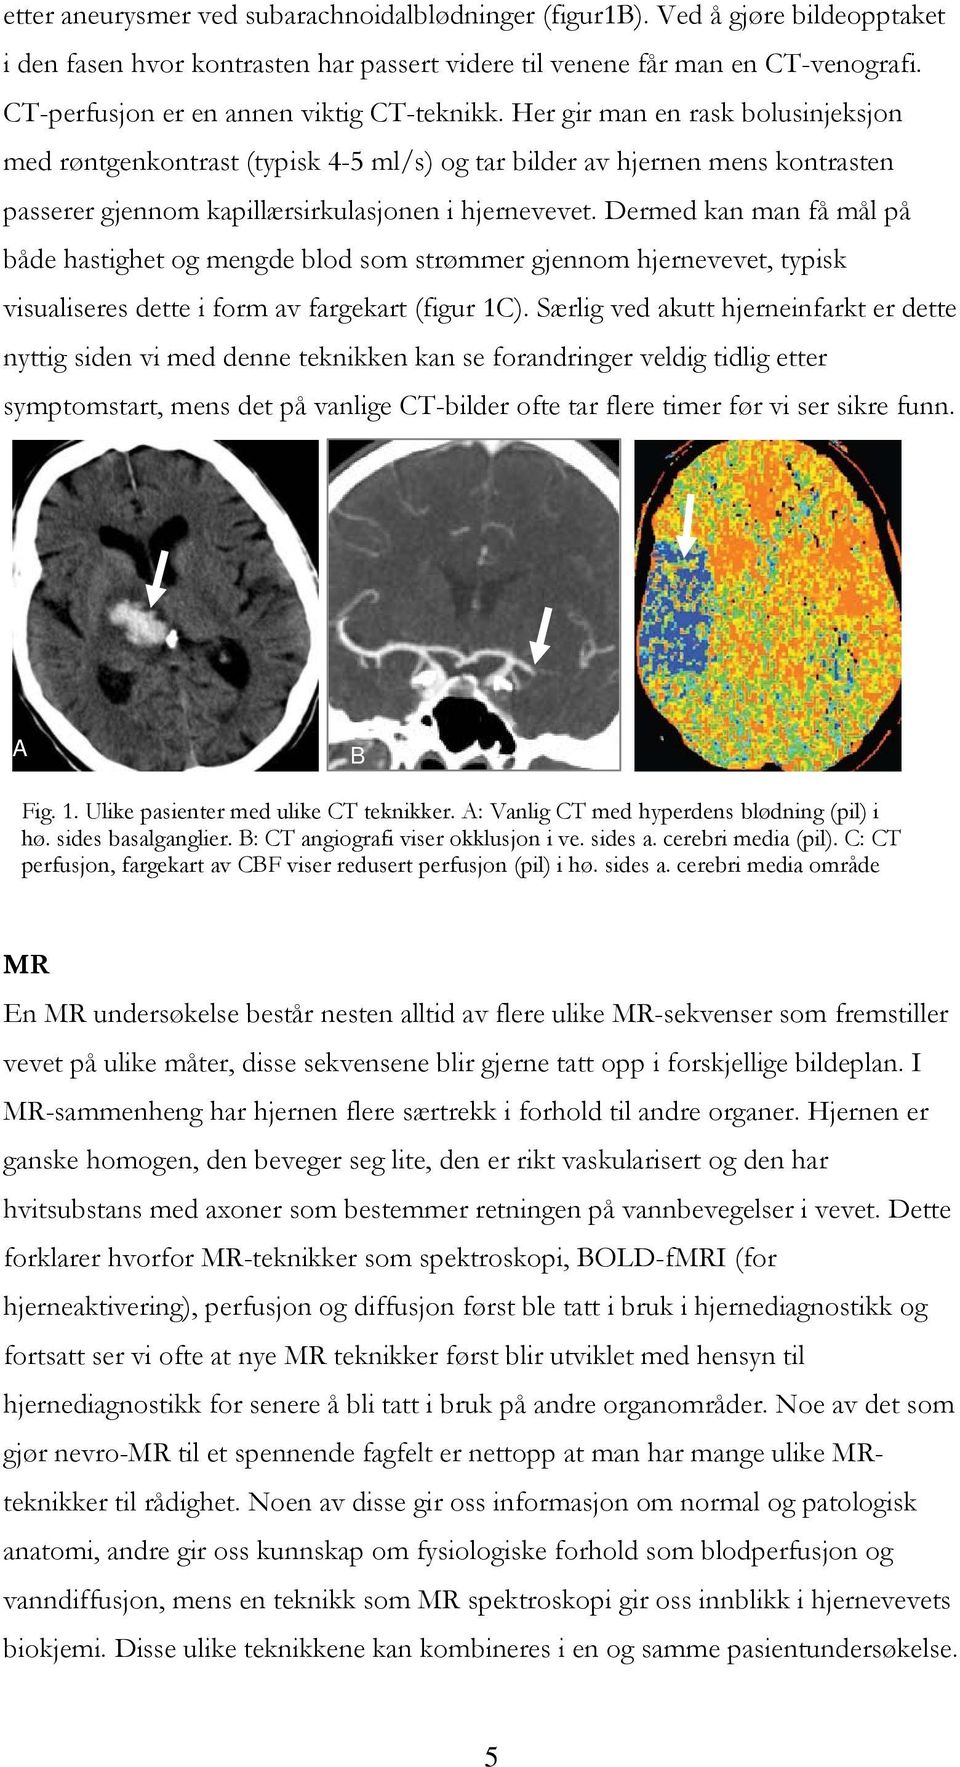 Her gir man en rask bolusinjeksjon med røntgenkontrast (typisk 4-5 ml/s) og tar bilder av hjernen mens kontrasten passerer gjennom kapillærsirkulasjonen i hjernevevet.